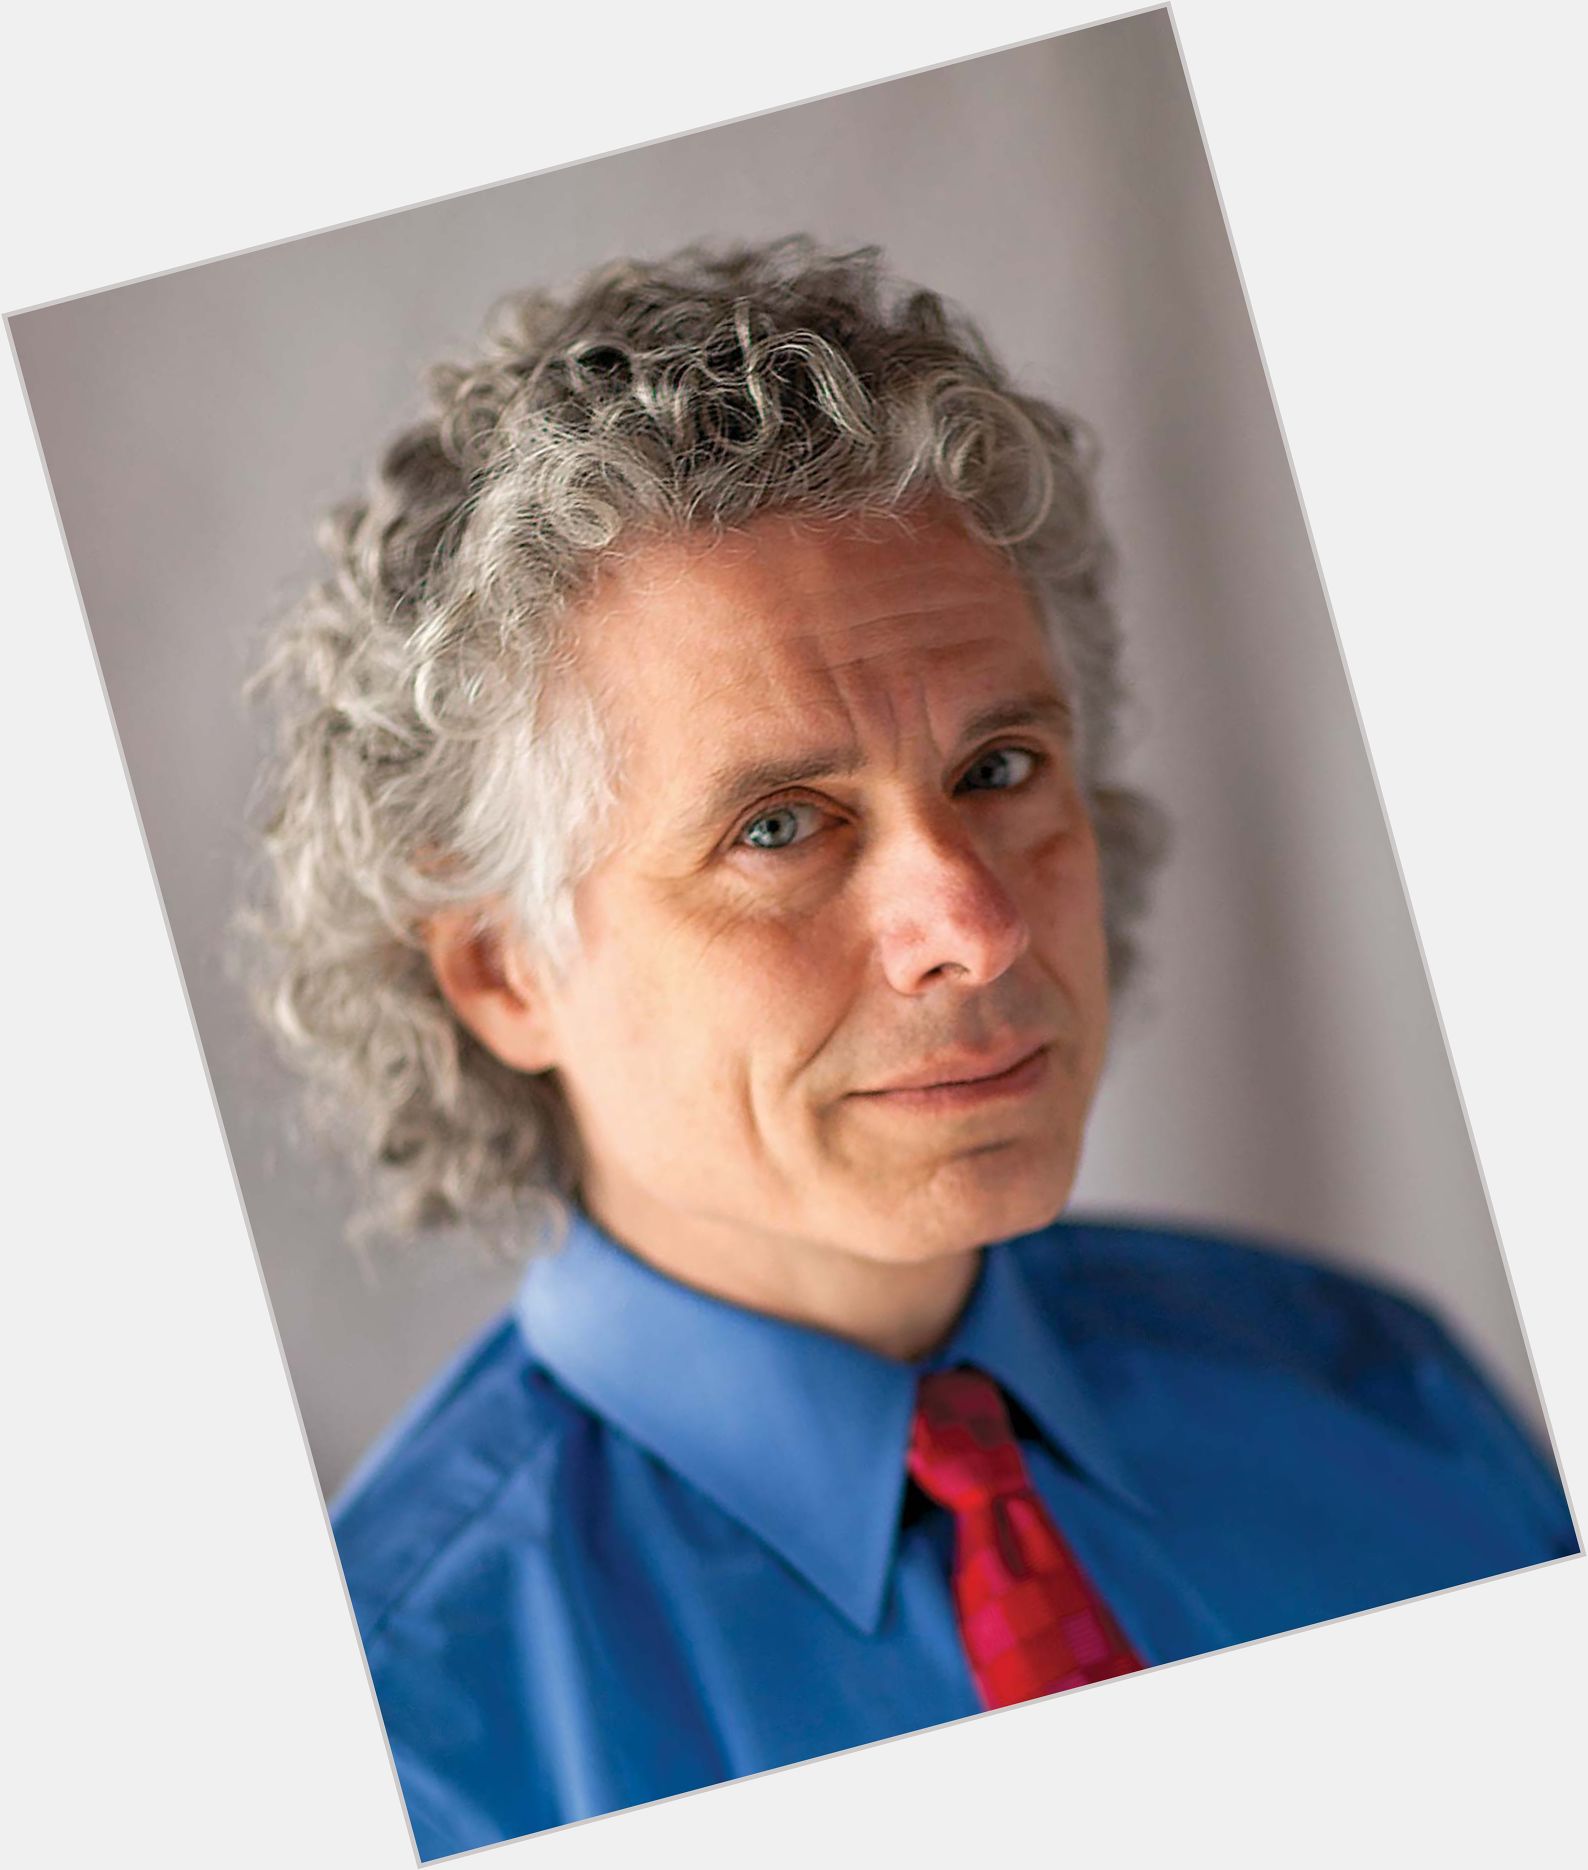 Steven Pinker  